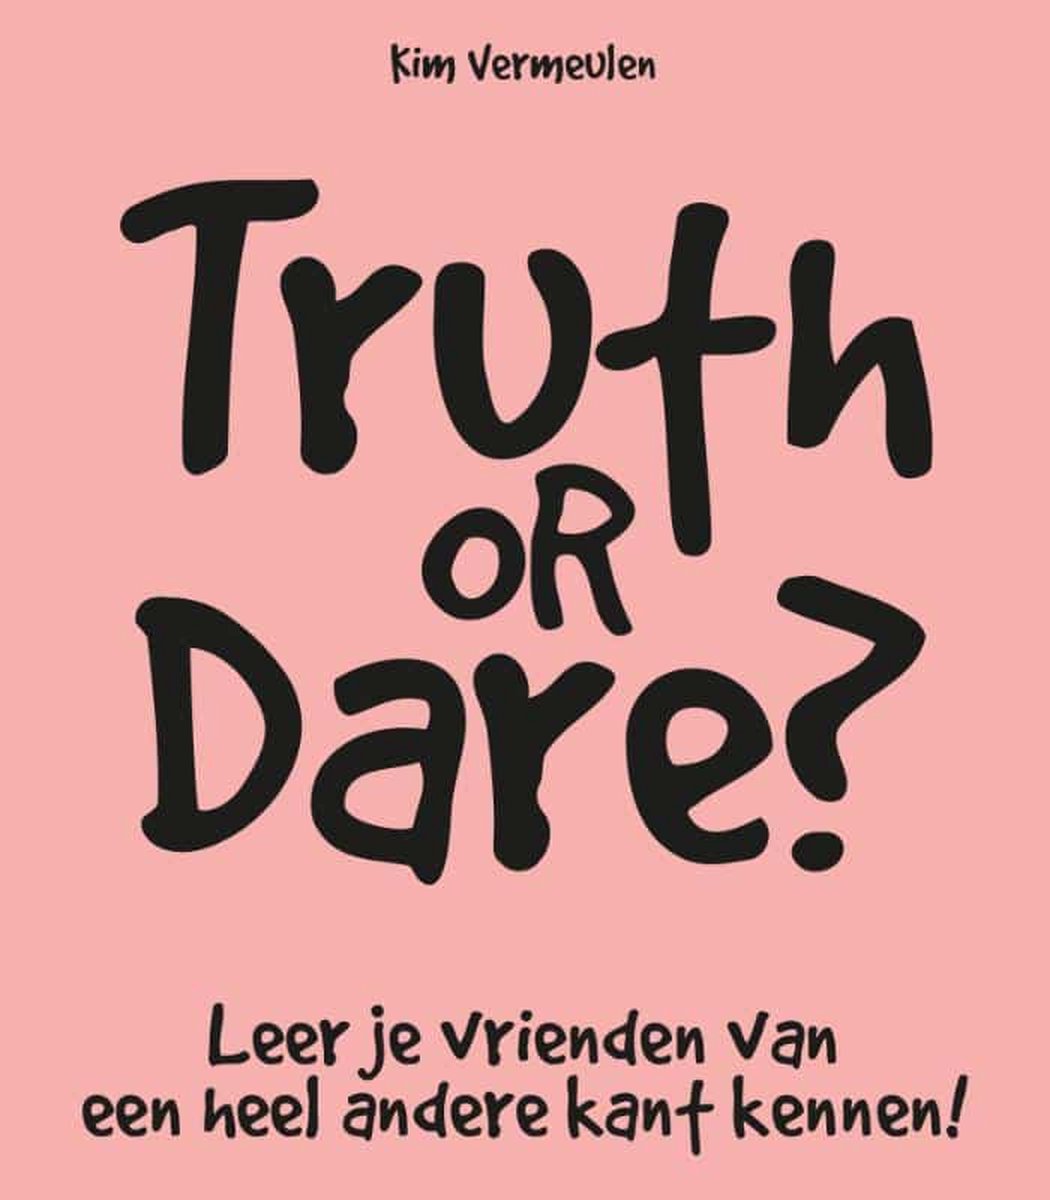 Truth or dare? - Kim Vermeulen